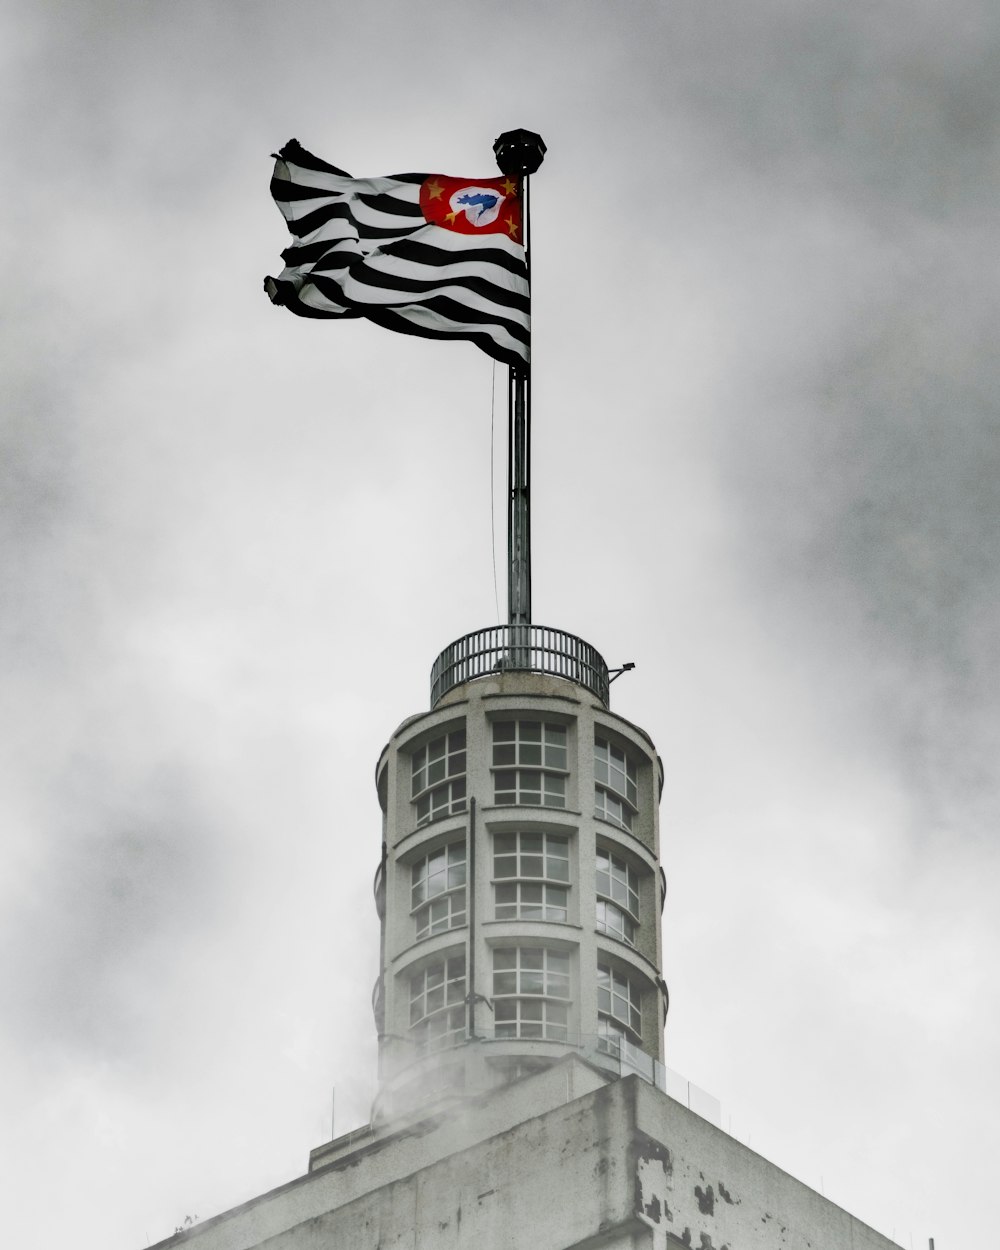 회색 콘크리트 건물 위에 깃발